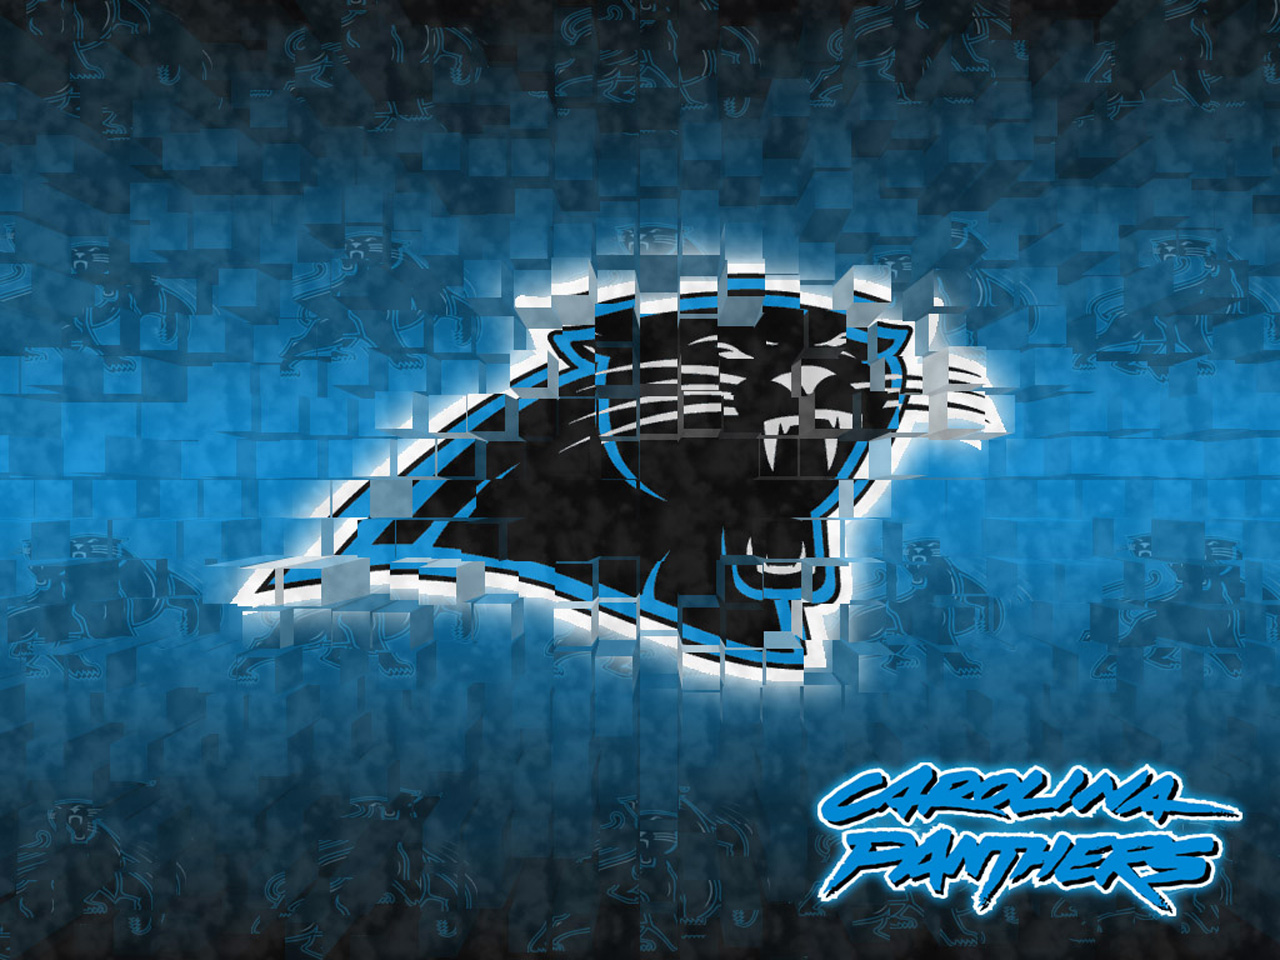 Carolina Panthers - Bing images